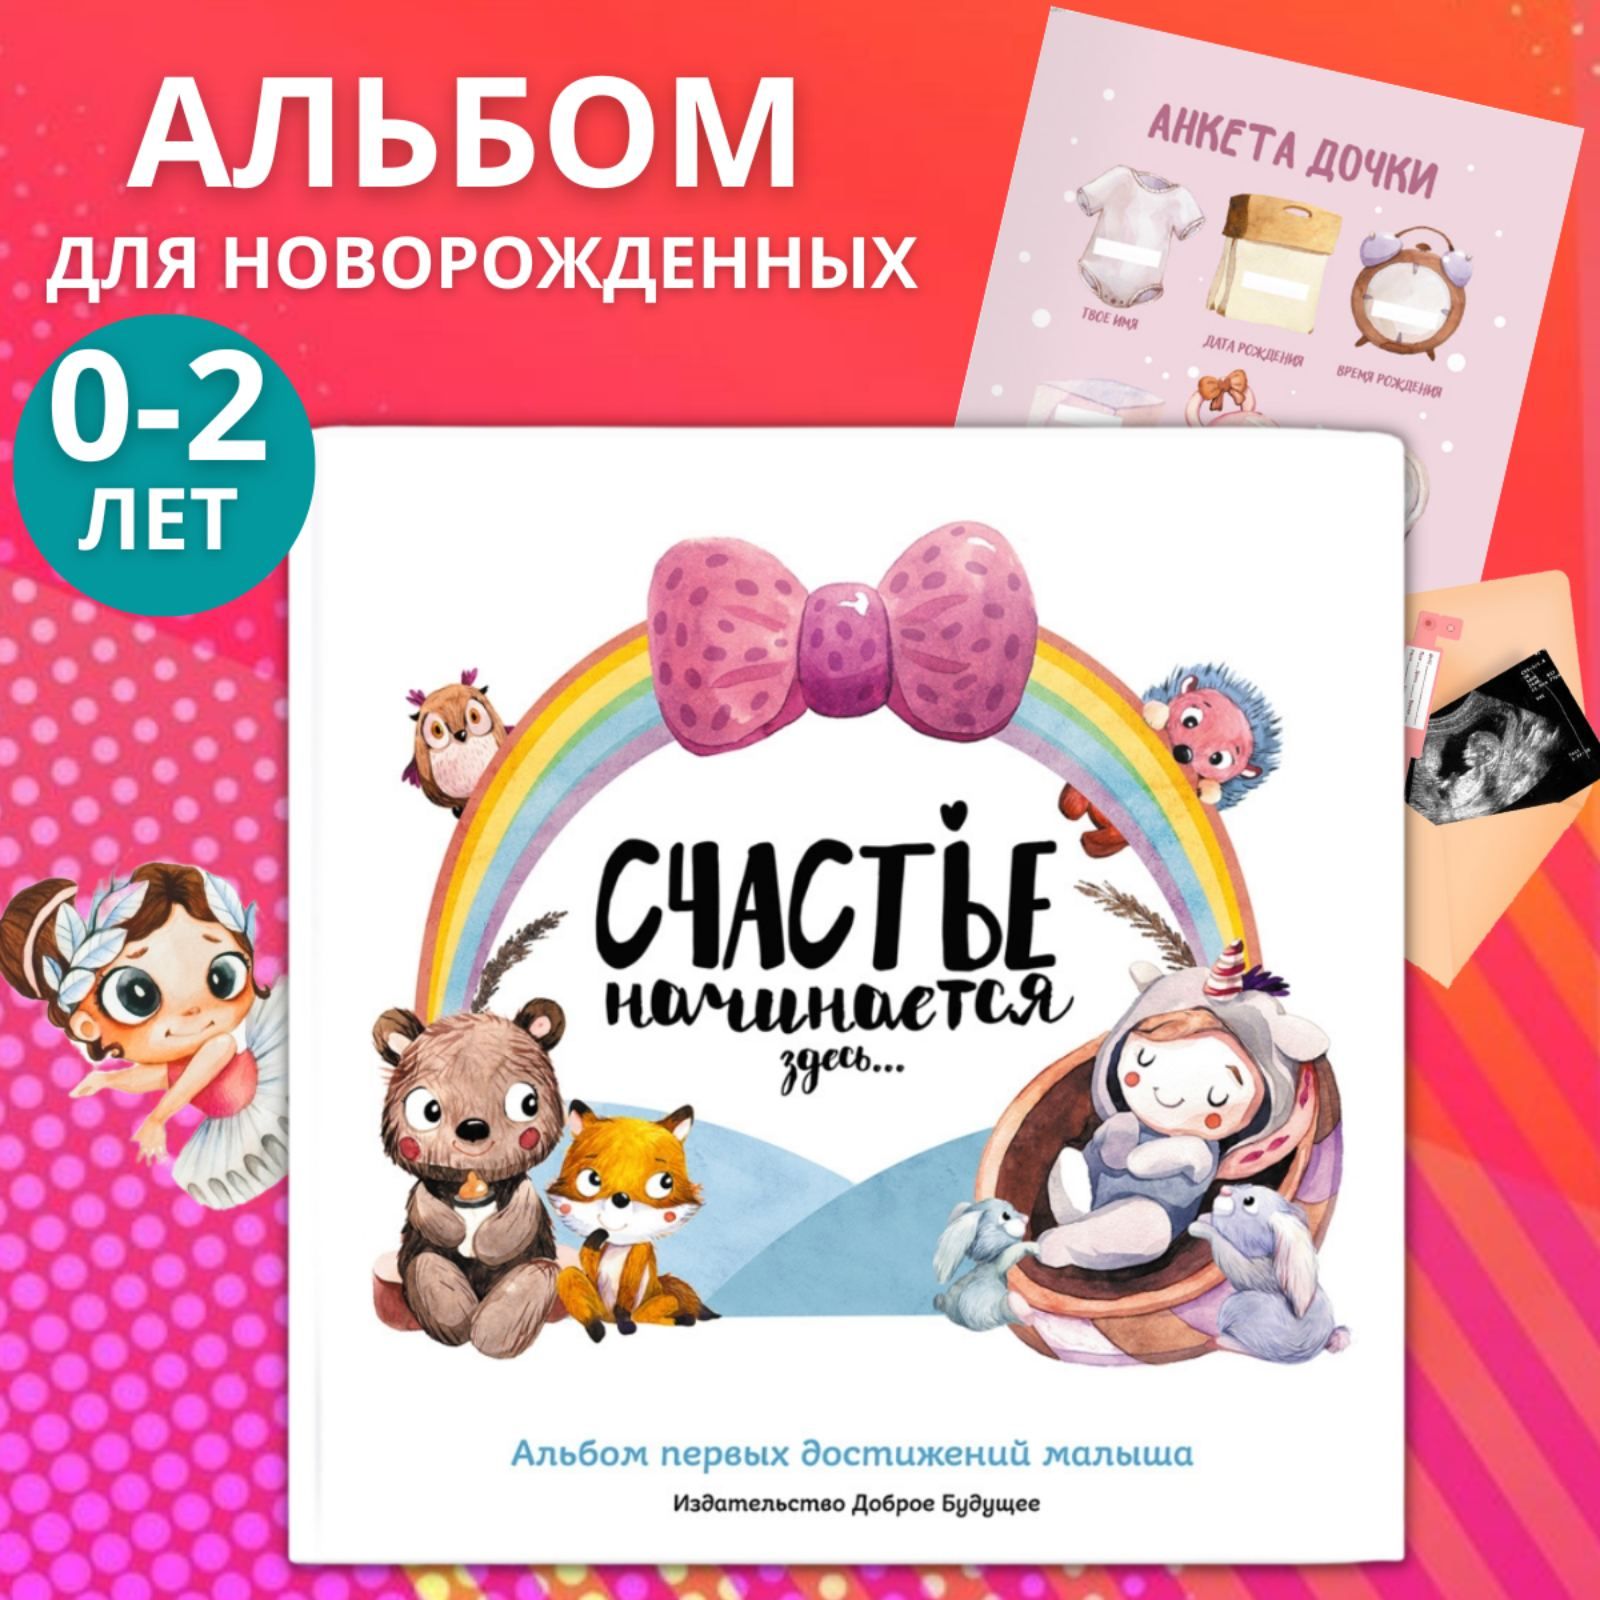 Альбомы для новорожденных купить в интернет-магазине Детский мир в Алматы, Астане